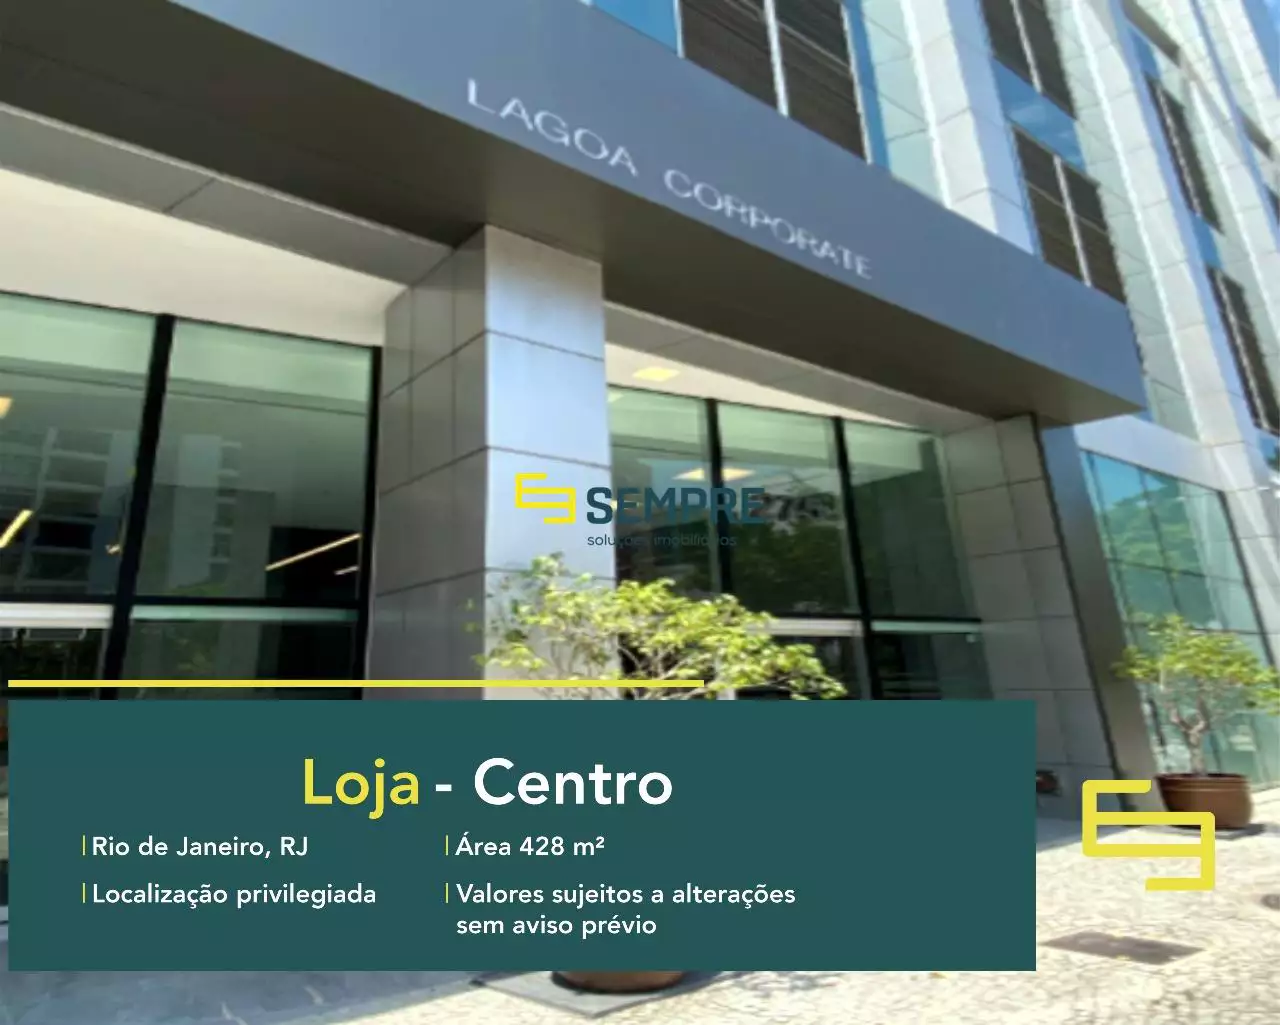 Loja para alugar no Lagoa Corporate - Rio de Janeiro, excelente localização. O estabelecimento comercial conta com área de 428 m².